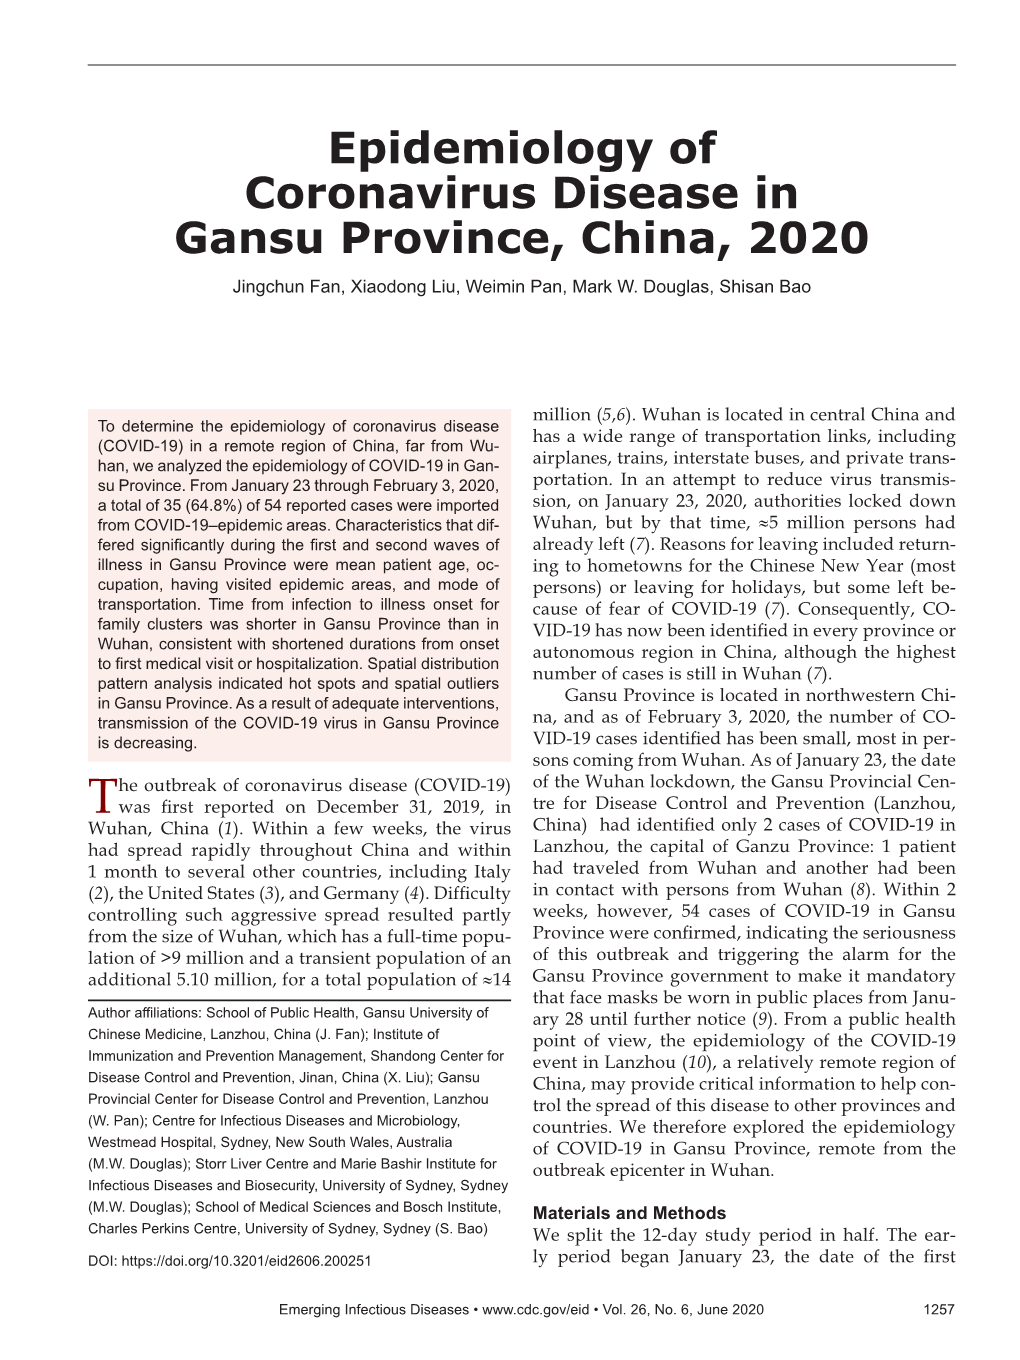 Epidemiology of Coronavirus Disease in Gansu Province, China, 2020 Jingchun Fan, Xiaodong Liu, Weimin Pan, Mark W